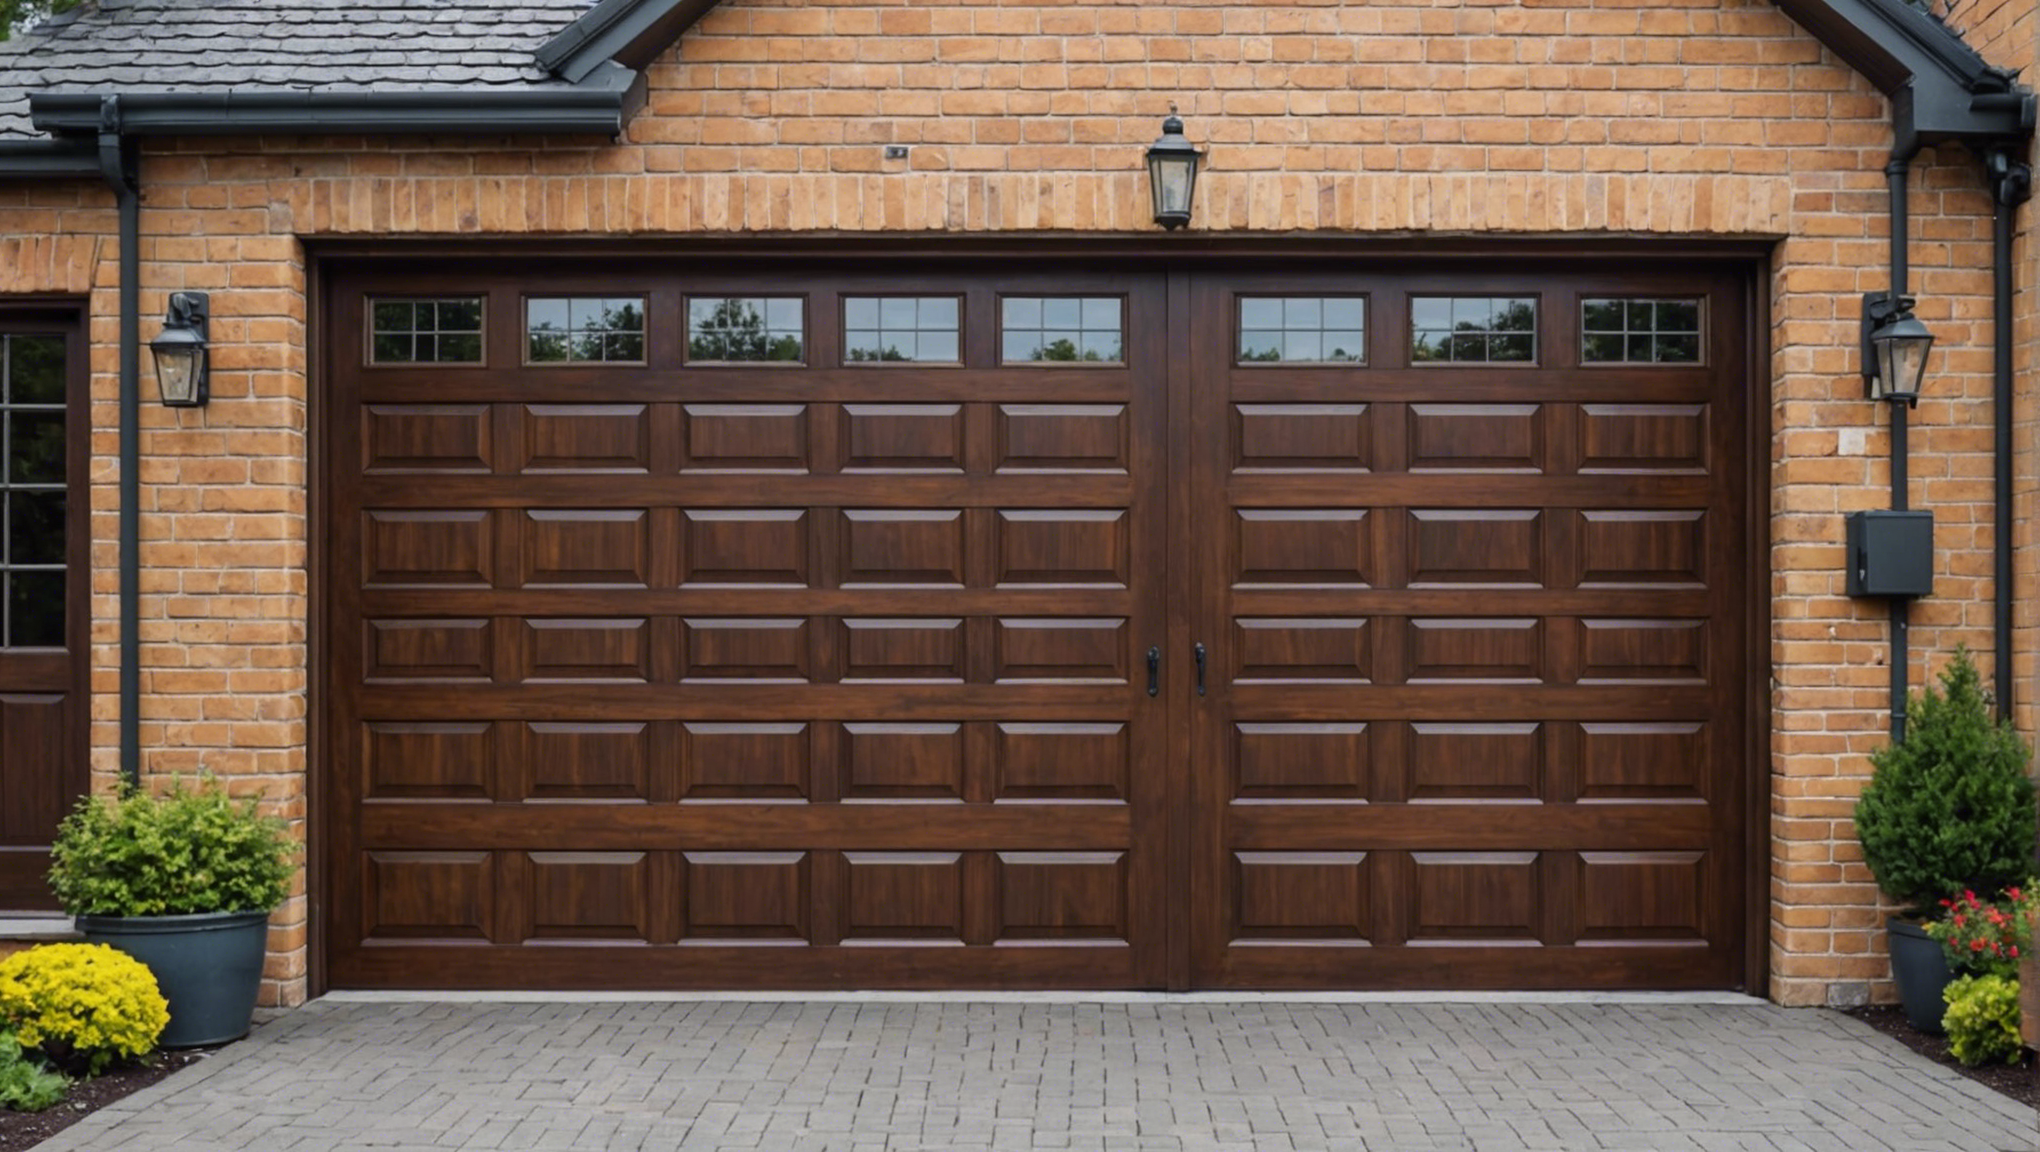 découvrez nos conseils pour choisir la bonne porte de garage : types, matériaux, dimensions et options. optez pour la sécurité et l'esthétique avec la bonne porte de garage pour votre habitation.